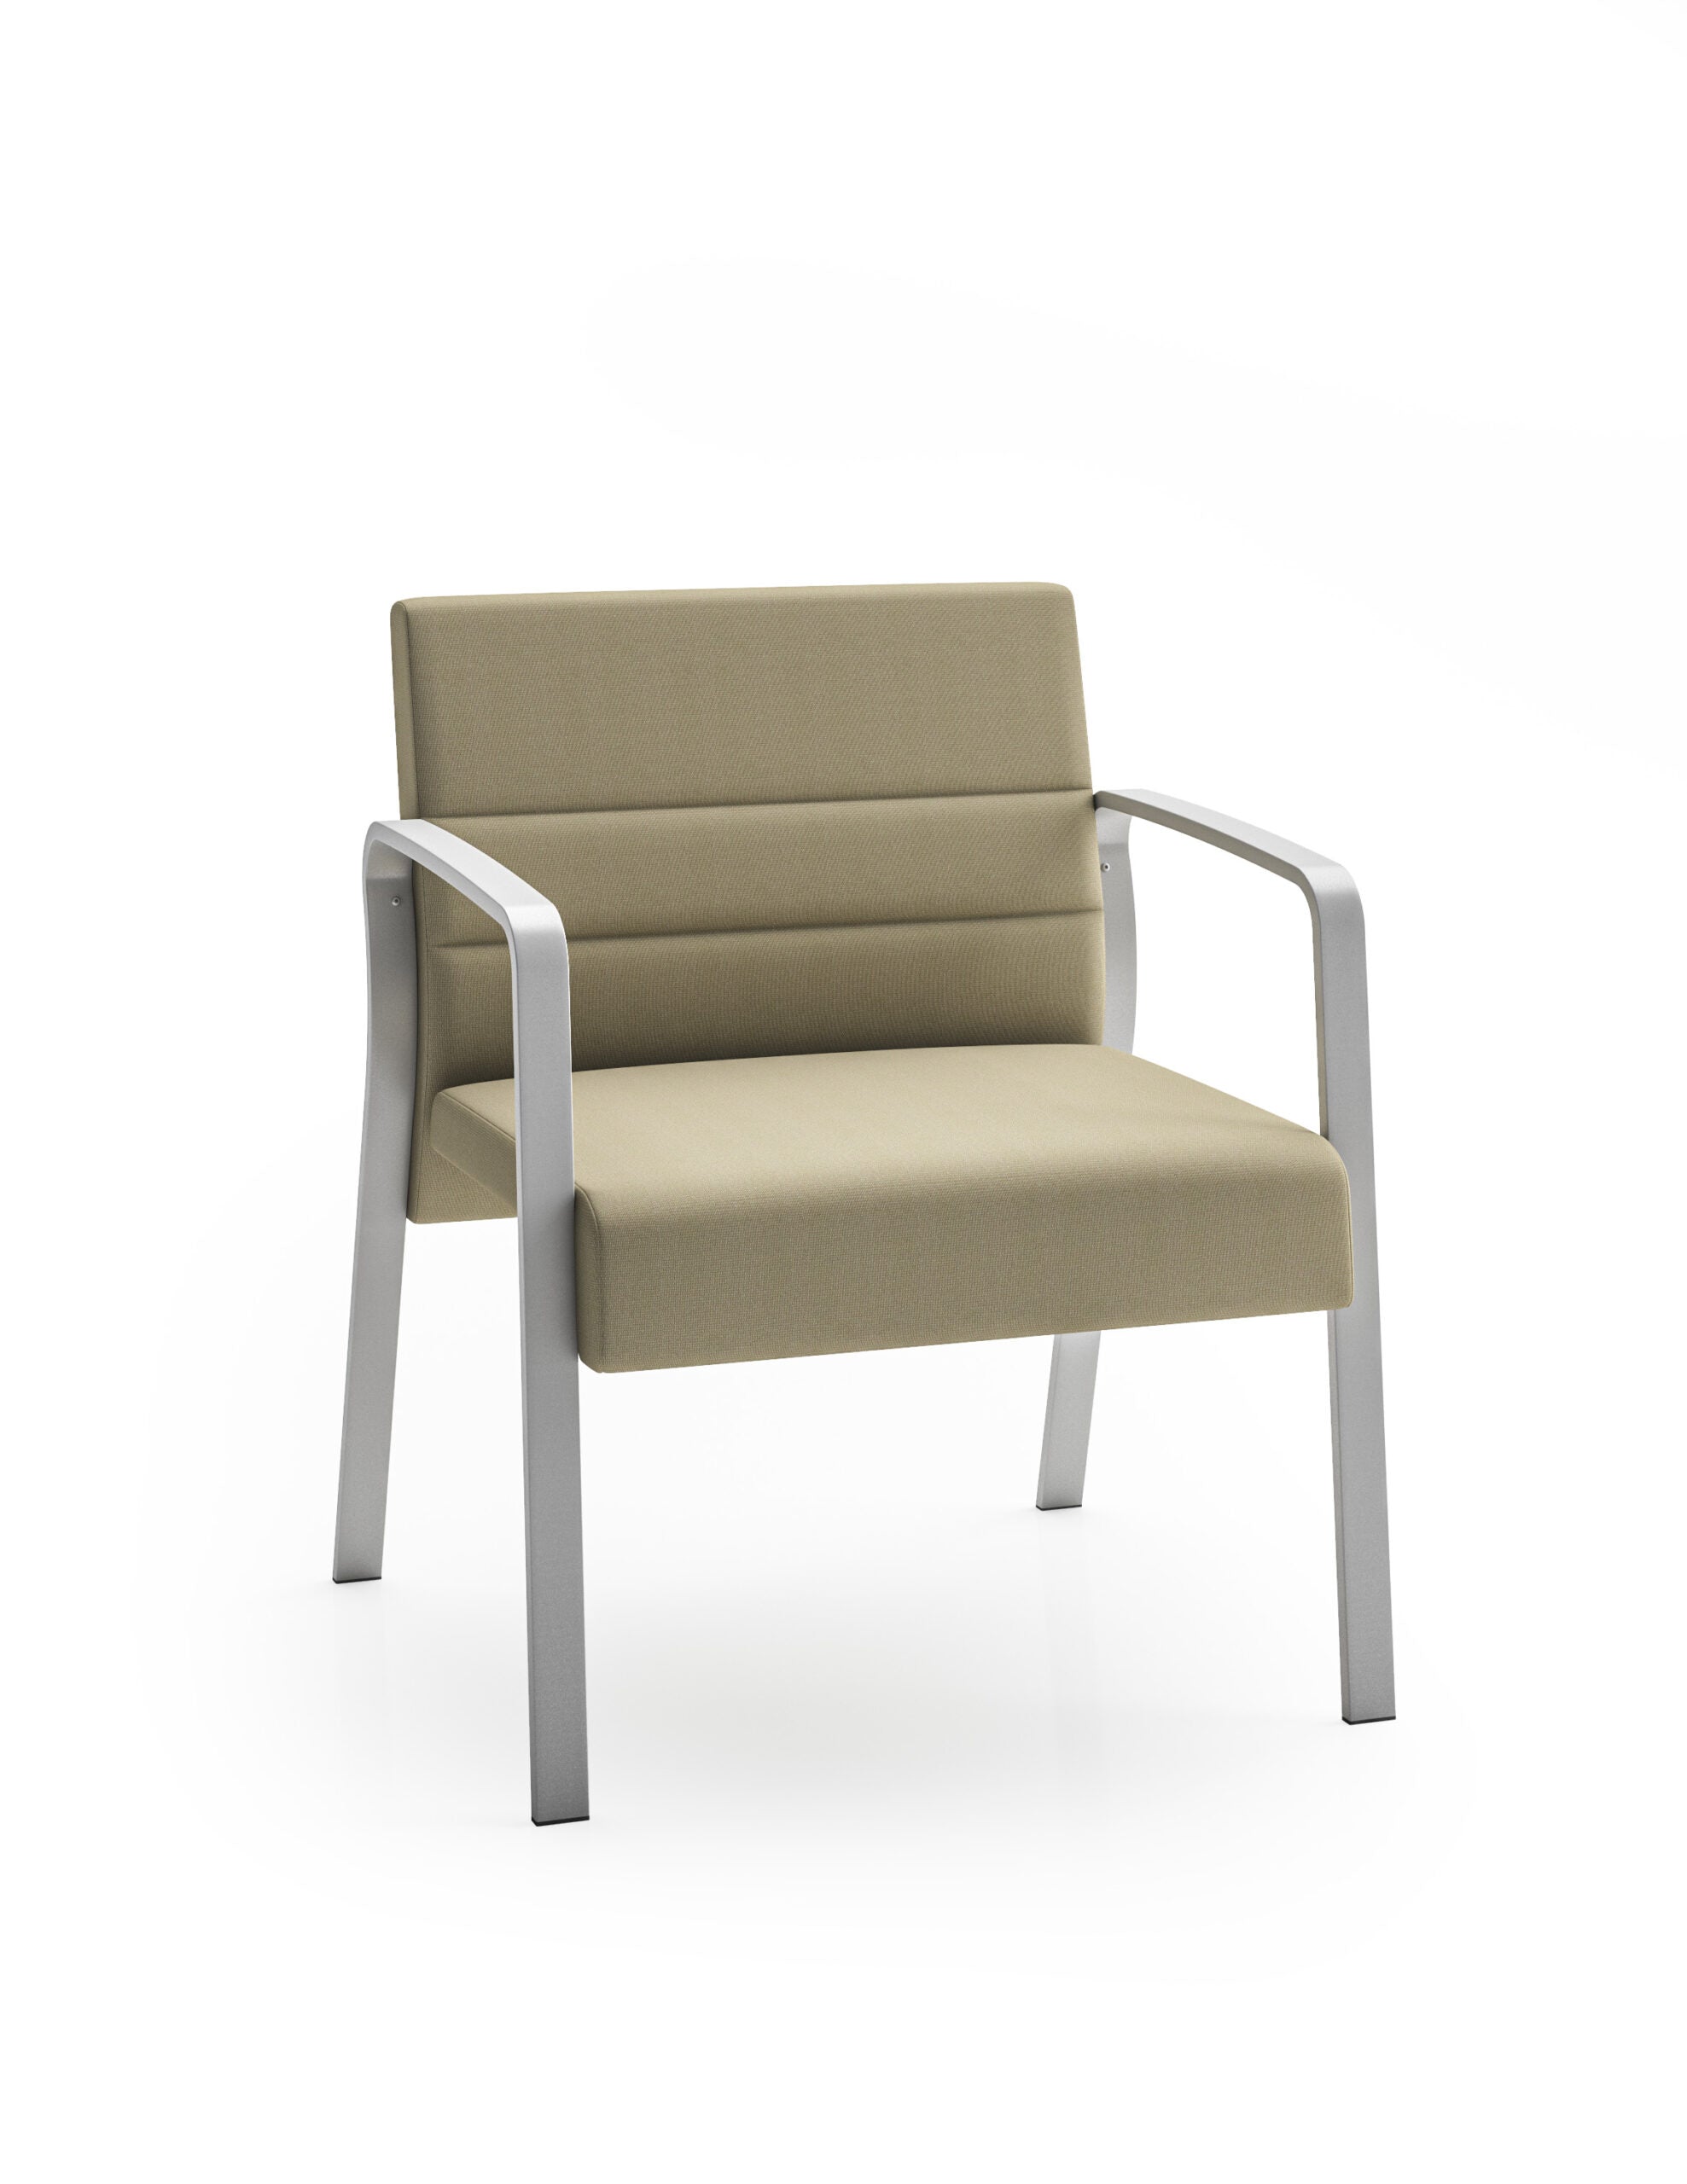 Lesro Waterfall Bariatric Chair Leg Base Grade 3 Fabric